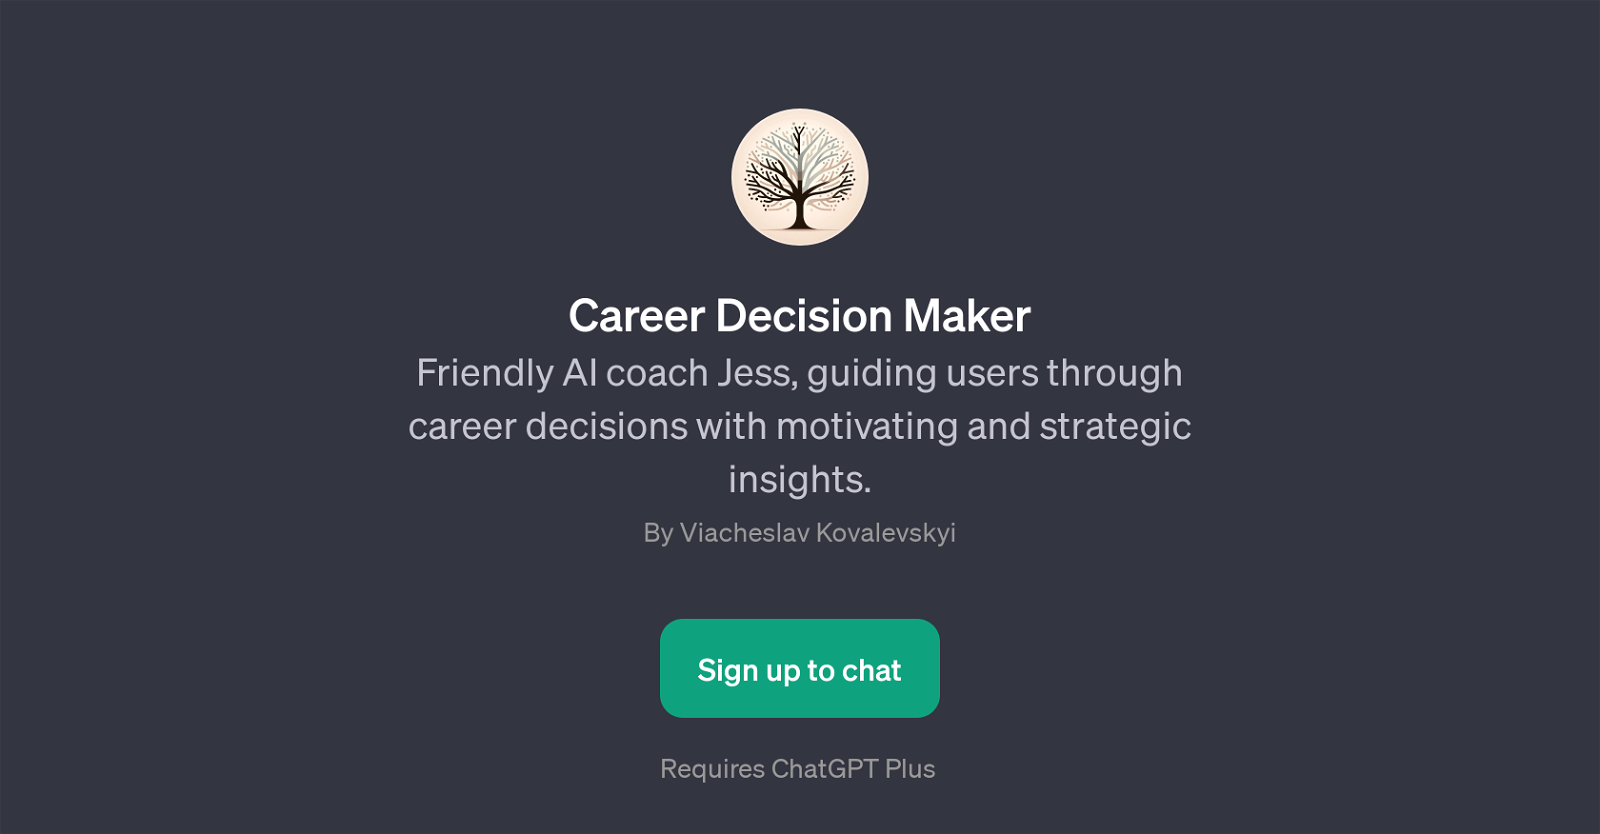 Career Decision Maker website